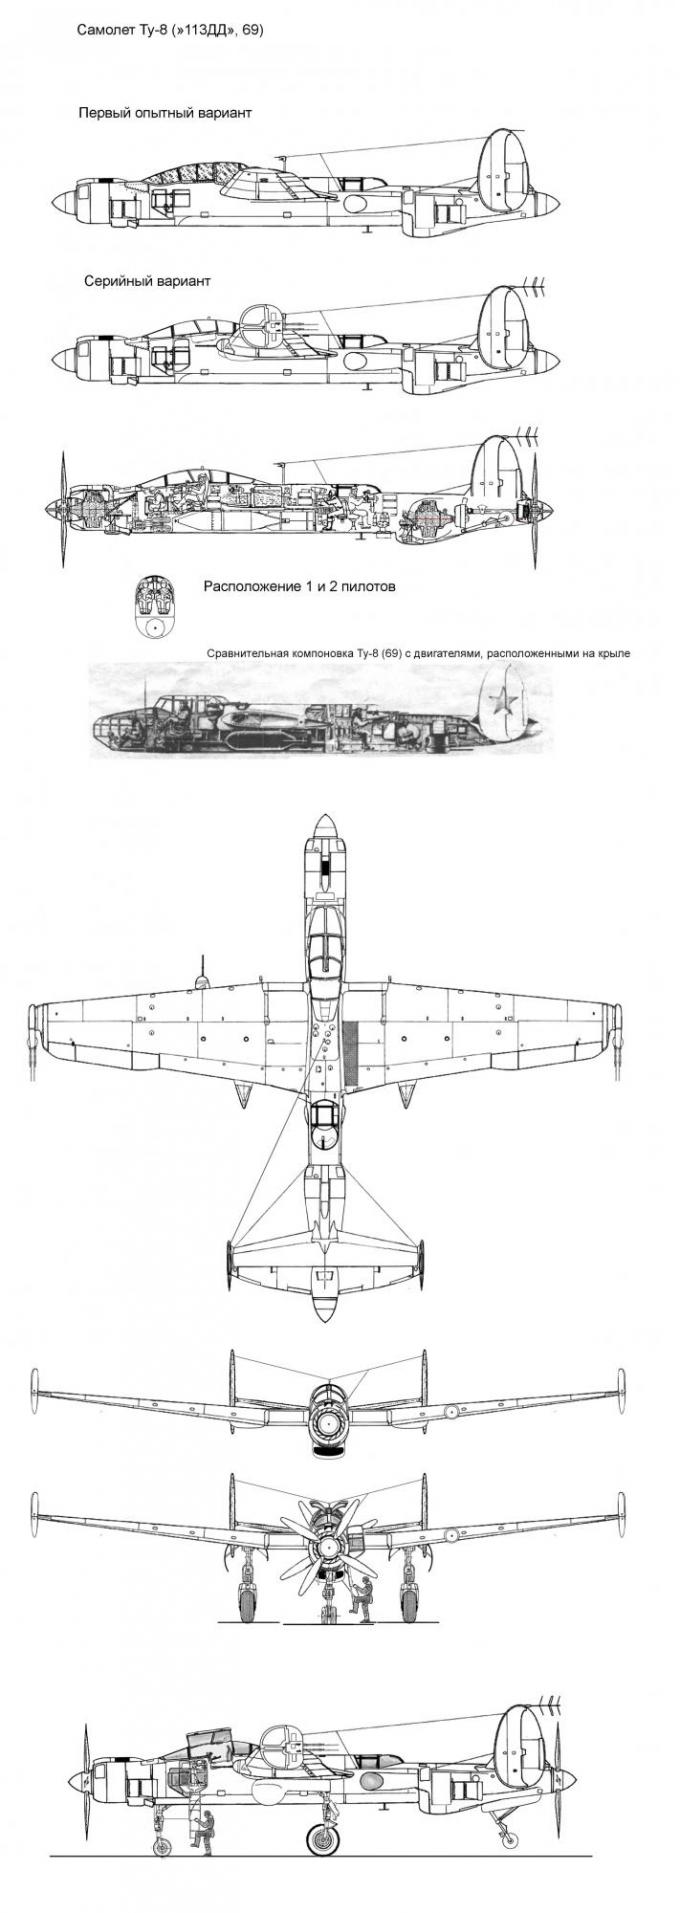 Самолет "69" (Ту-8)